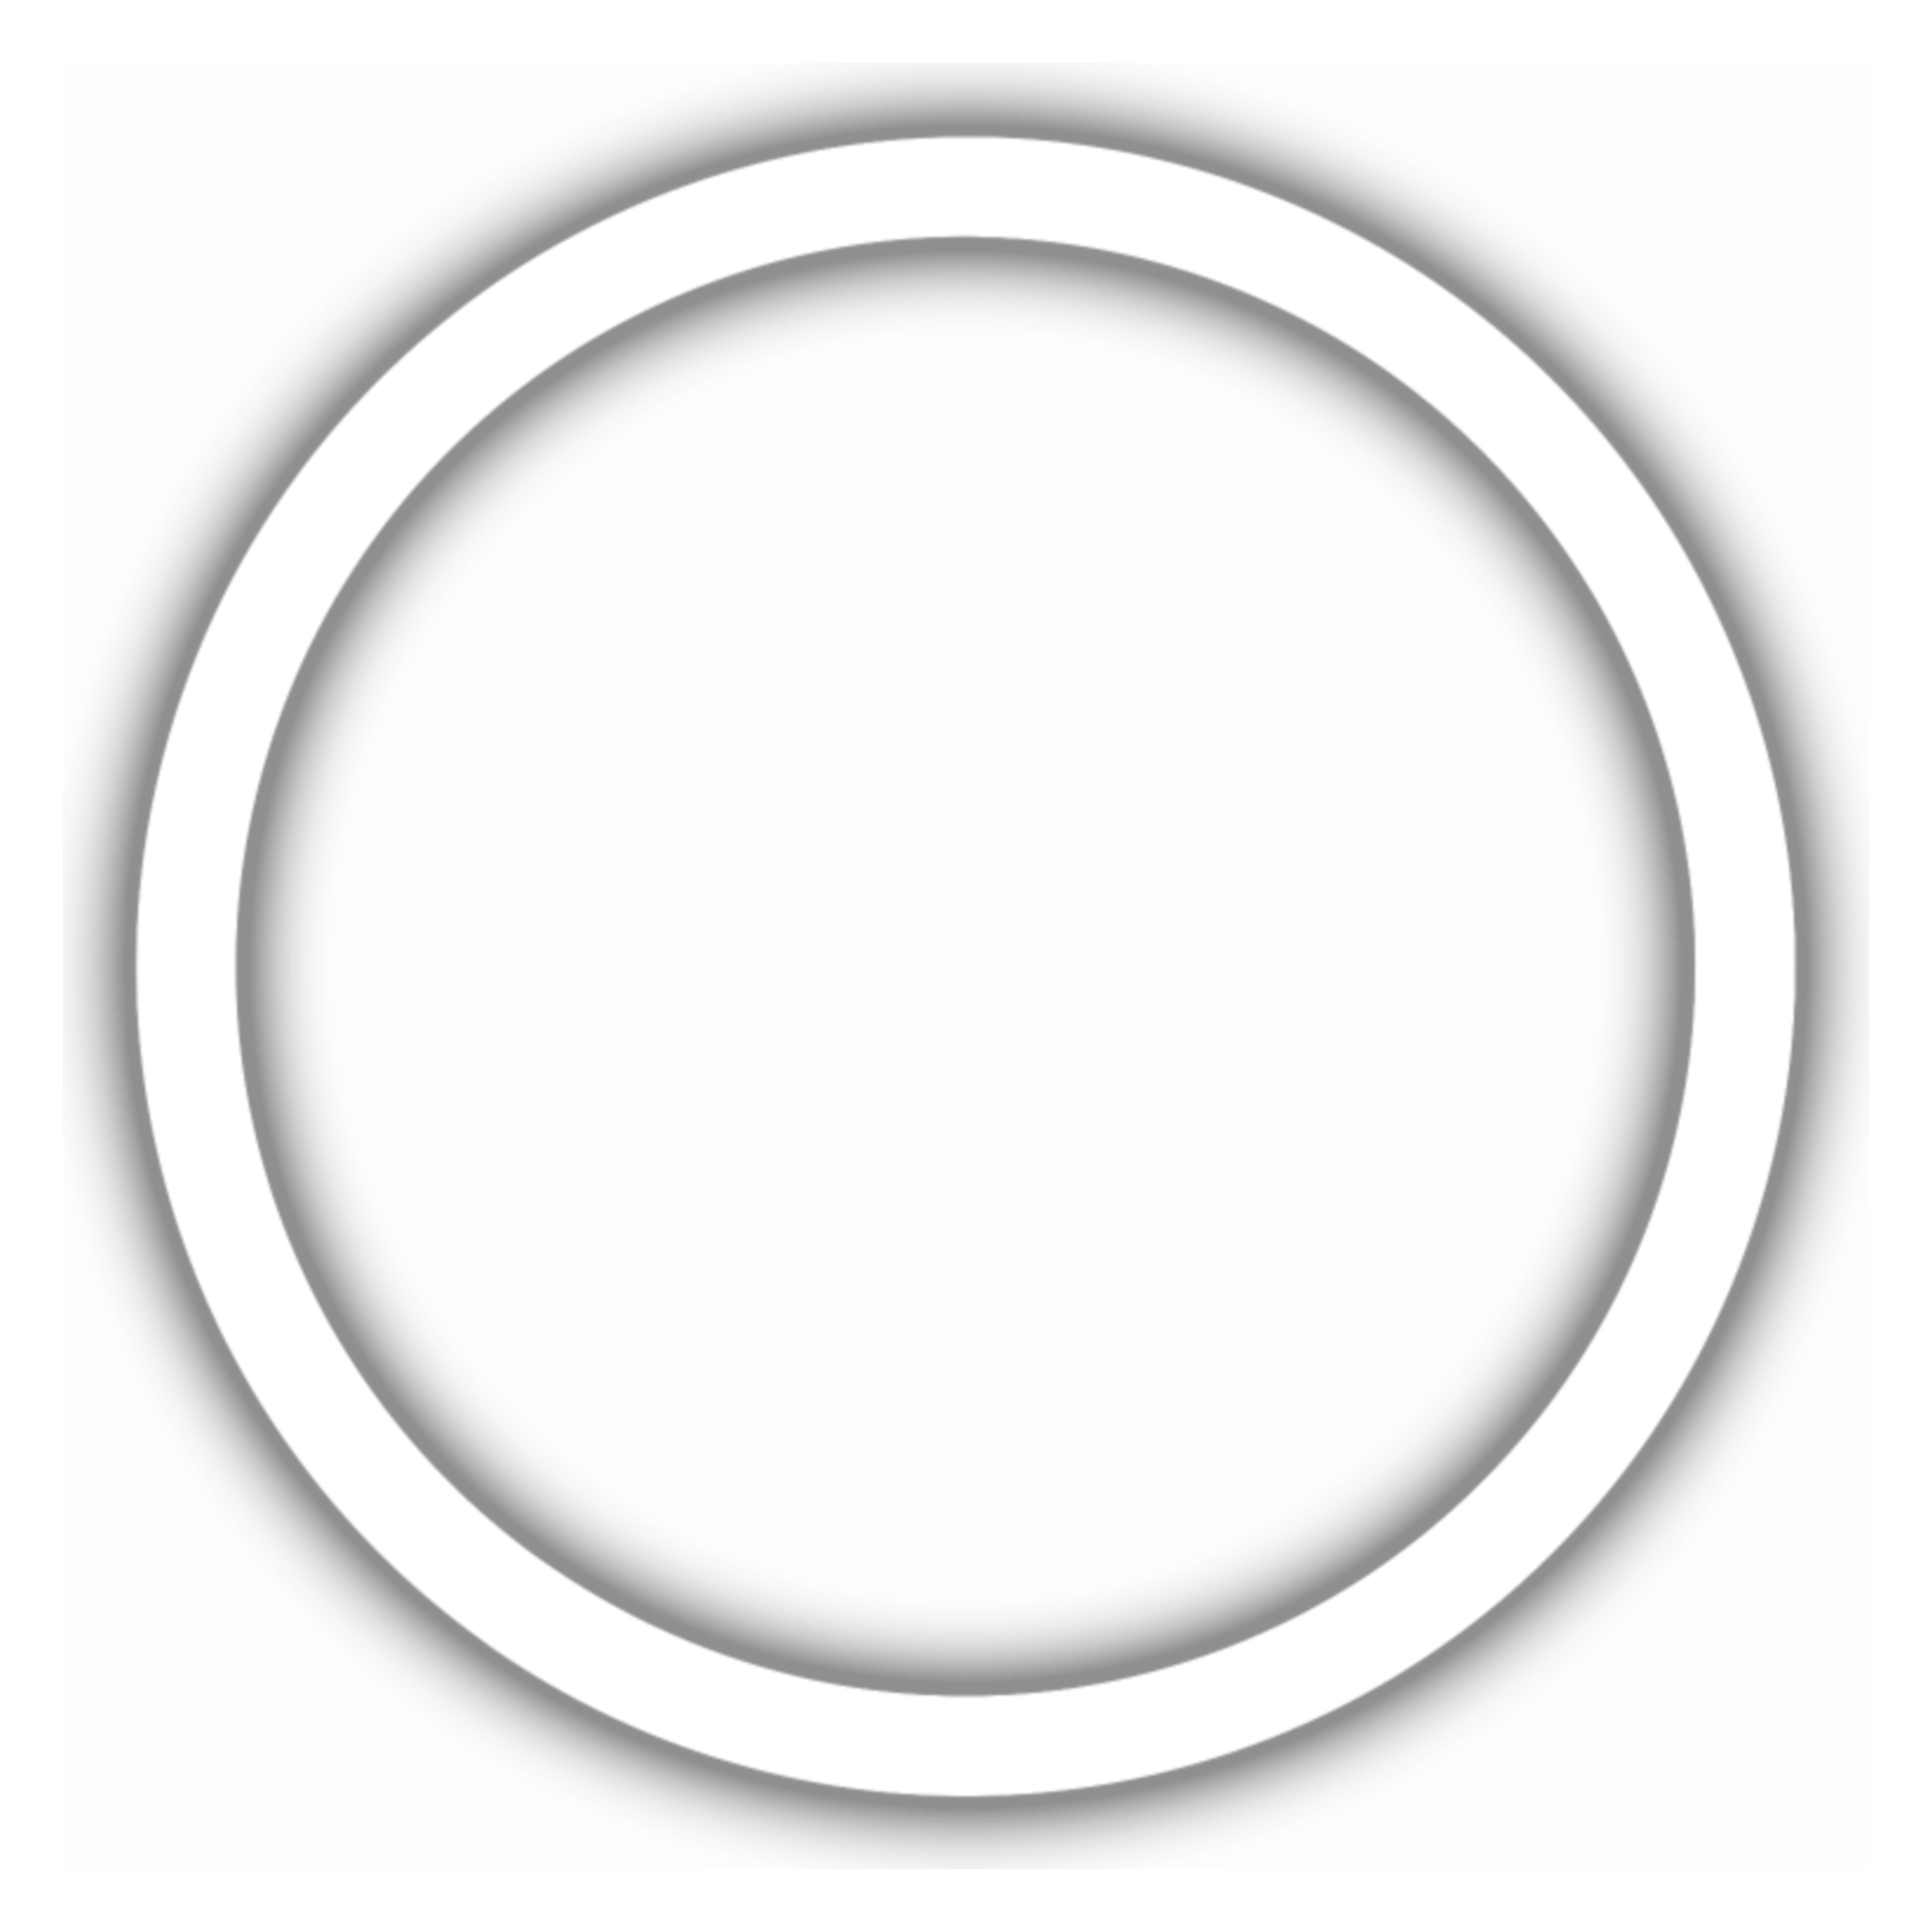 Круг без цензуры. В круге белом. Белые кружочки. Белый круг на прозрачном. Полупрозрачный круг.